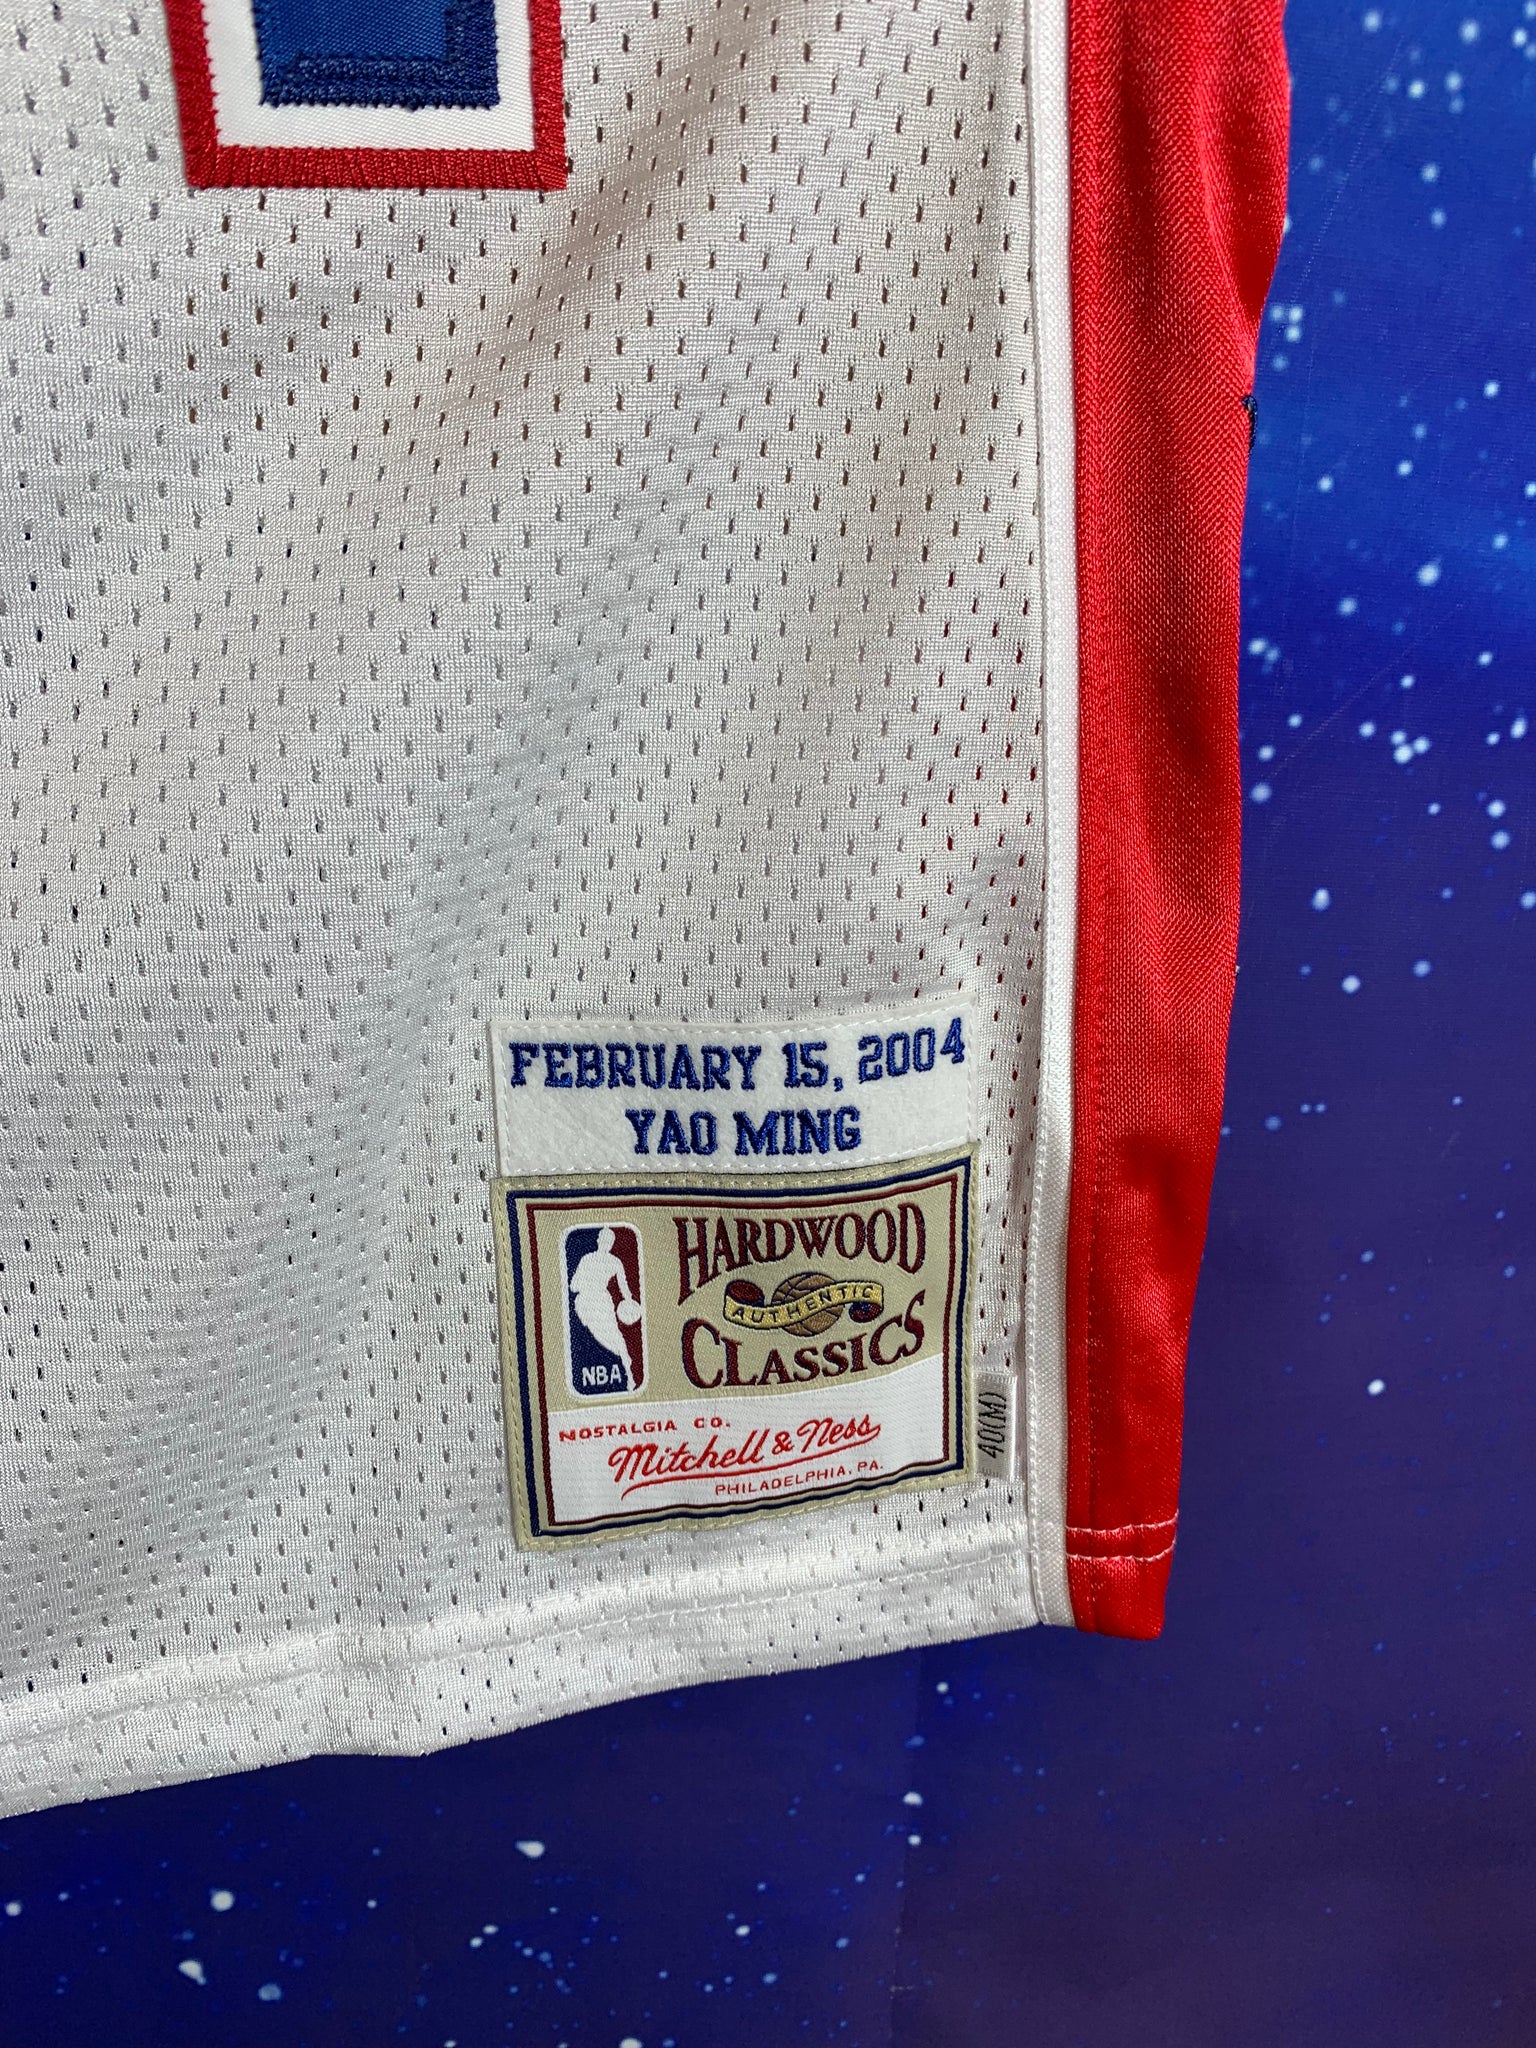 Houston Rockets Yao Ming Jersey, Rockets Collection, Rockets Yao Ming Jersey  Gear